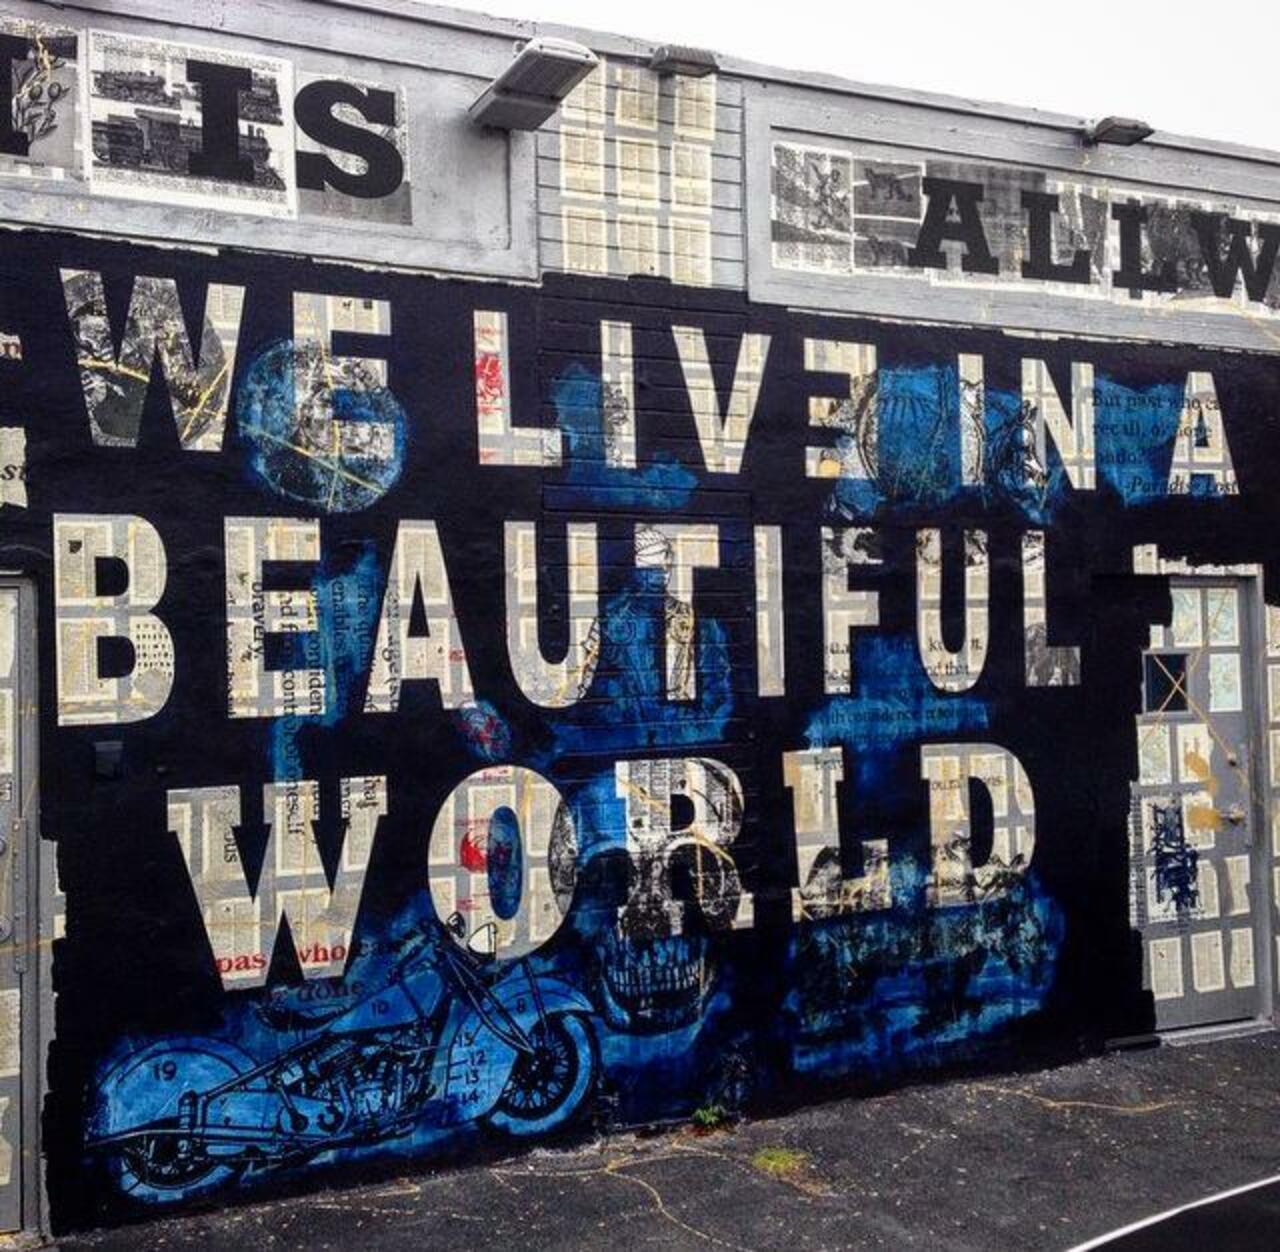 We live in a beautiful world... 

Street Art by Peter Tunney 
#art #arte #graffiti #streetart http://t.co/SWL3gWd5f2